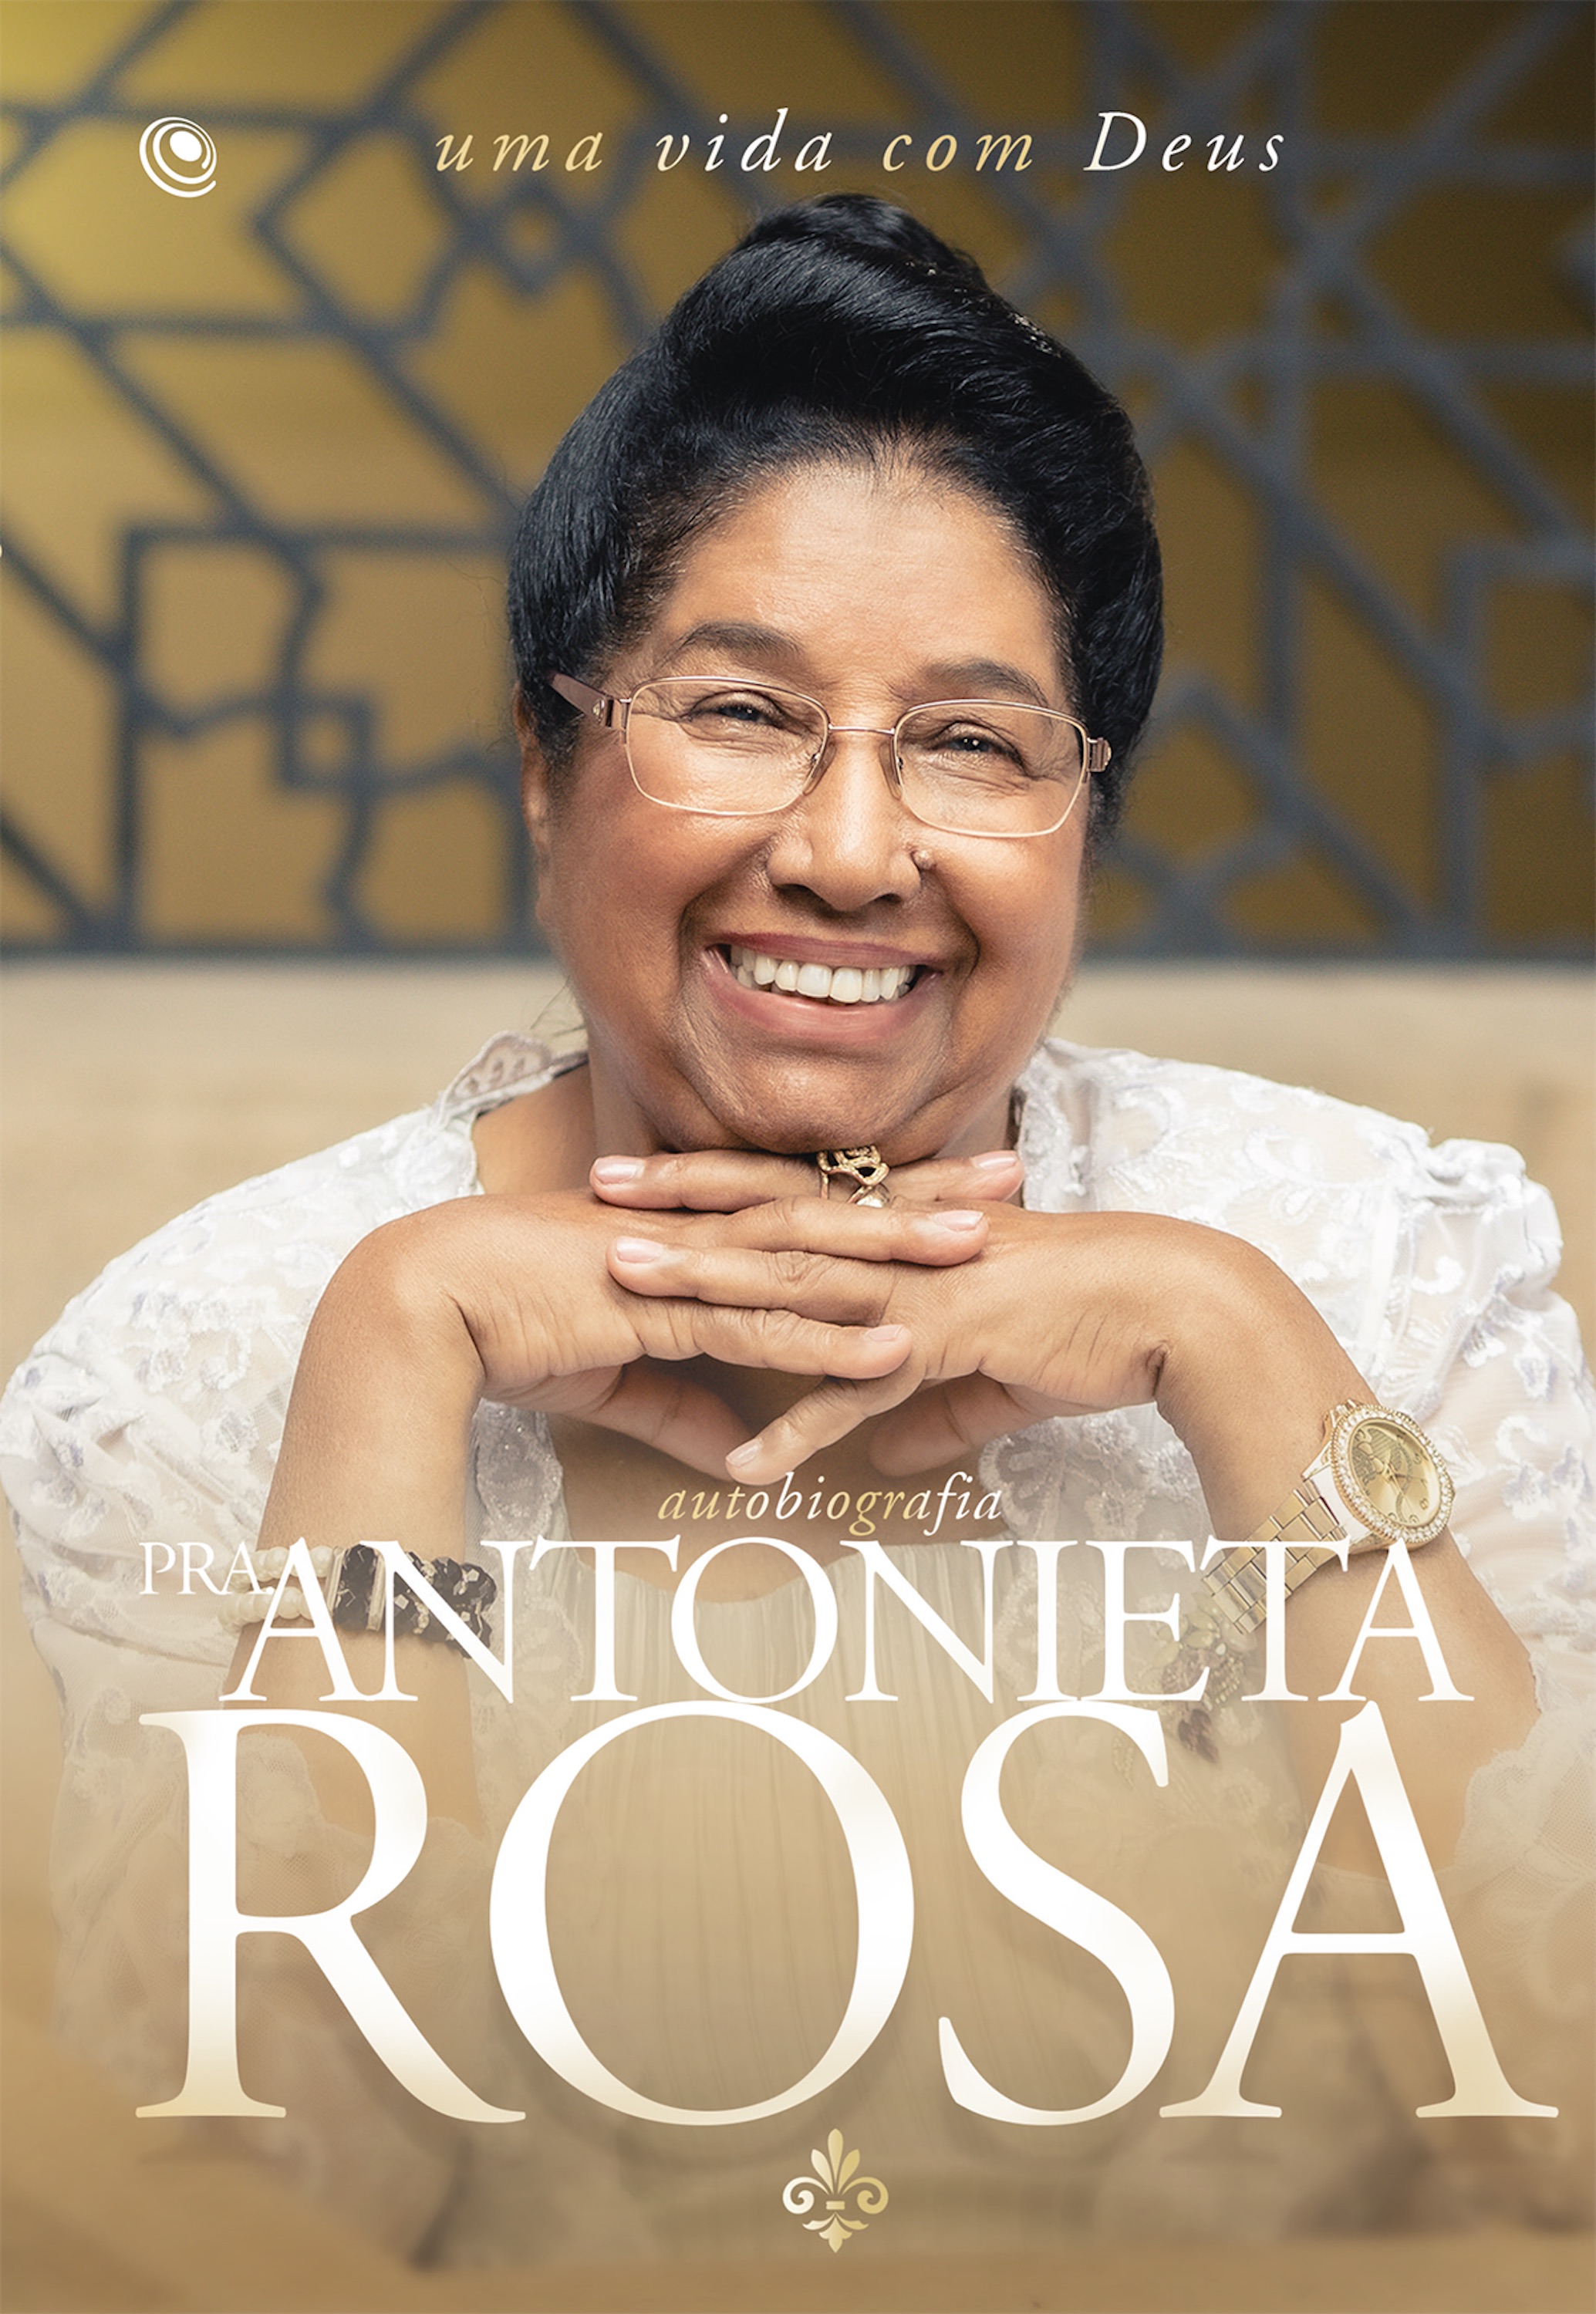 Autobiografia Pra. Antonieta Rosa